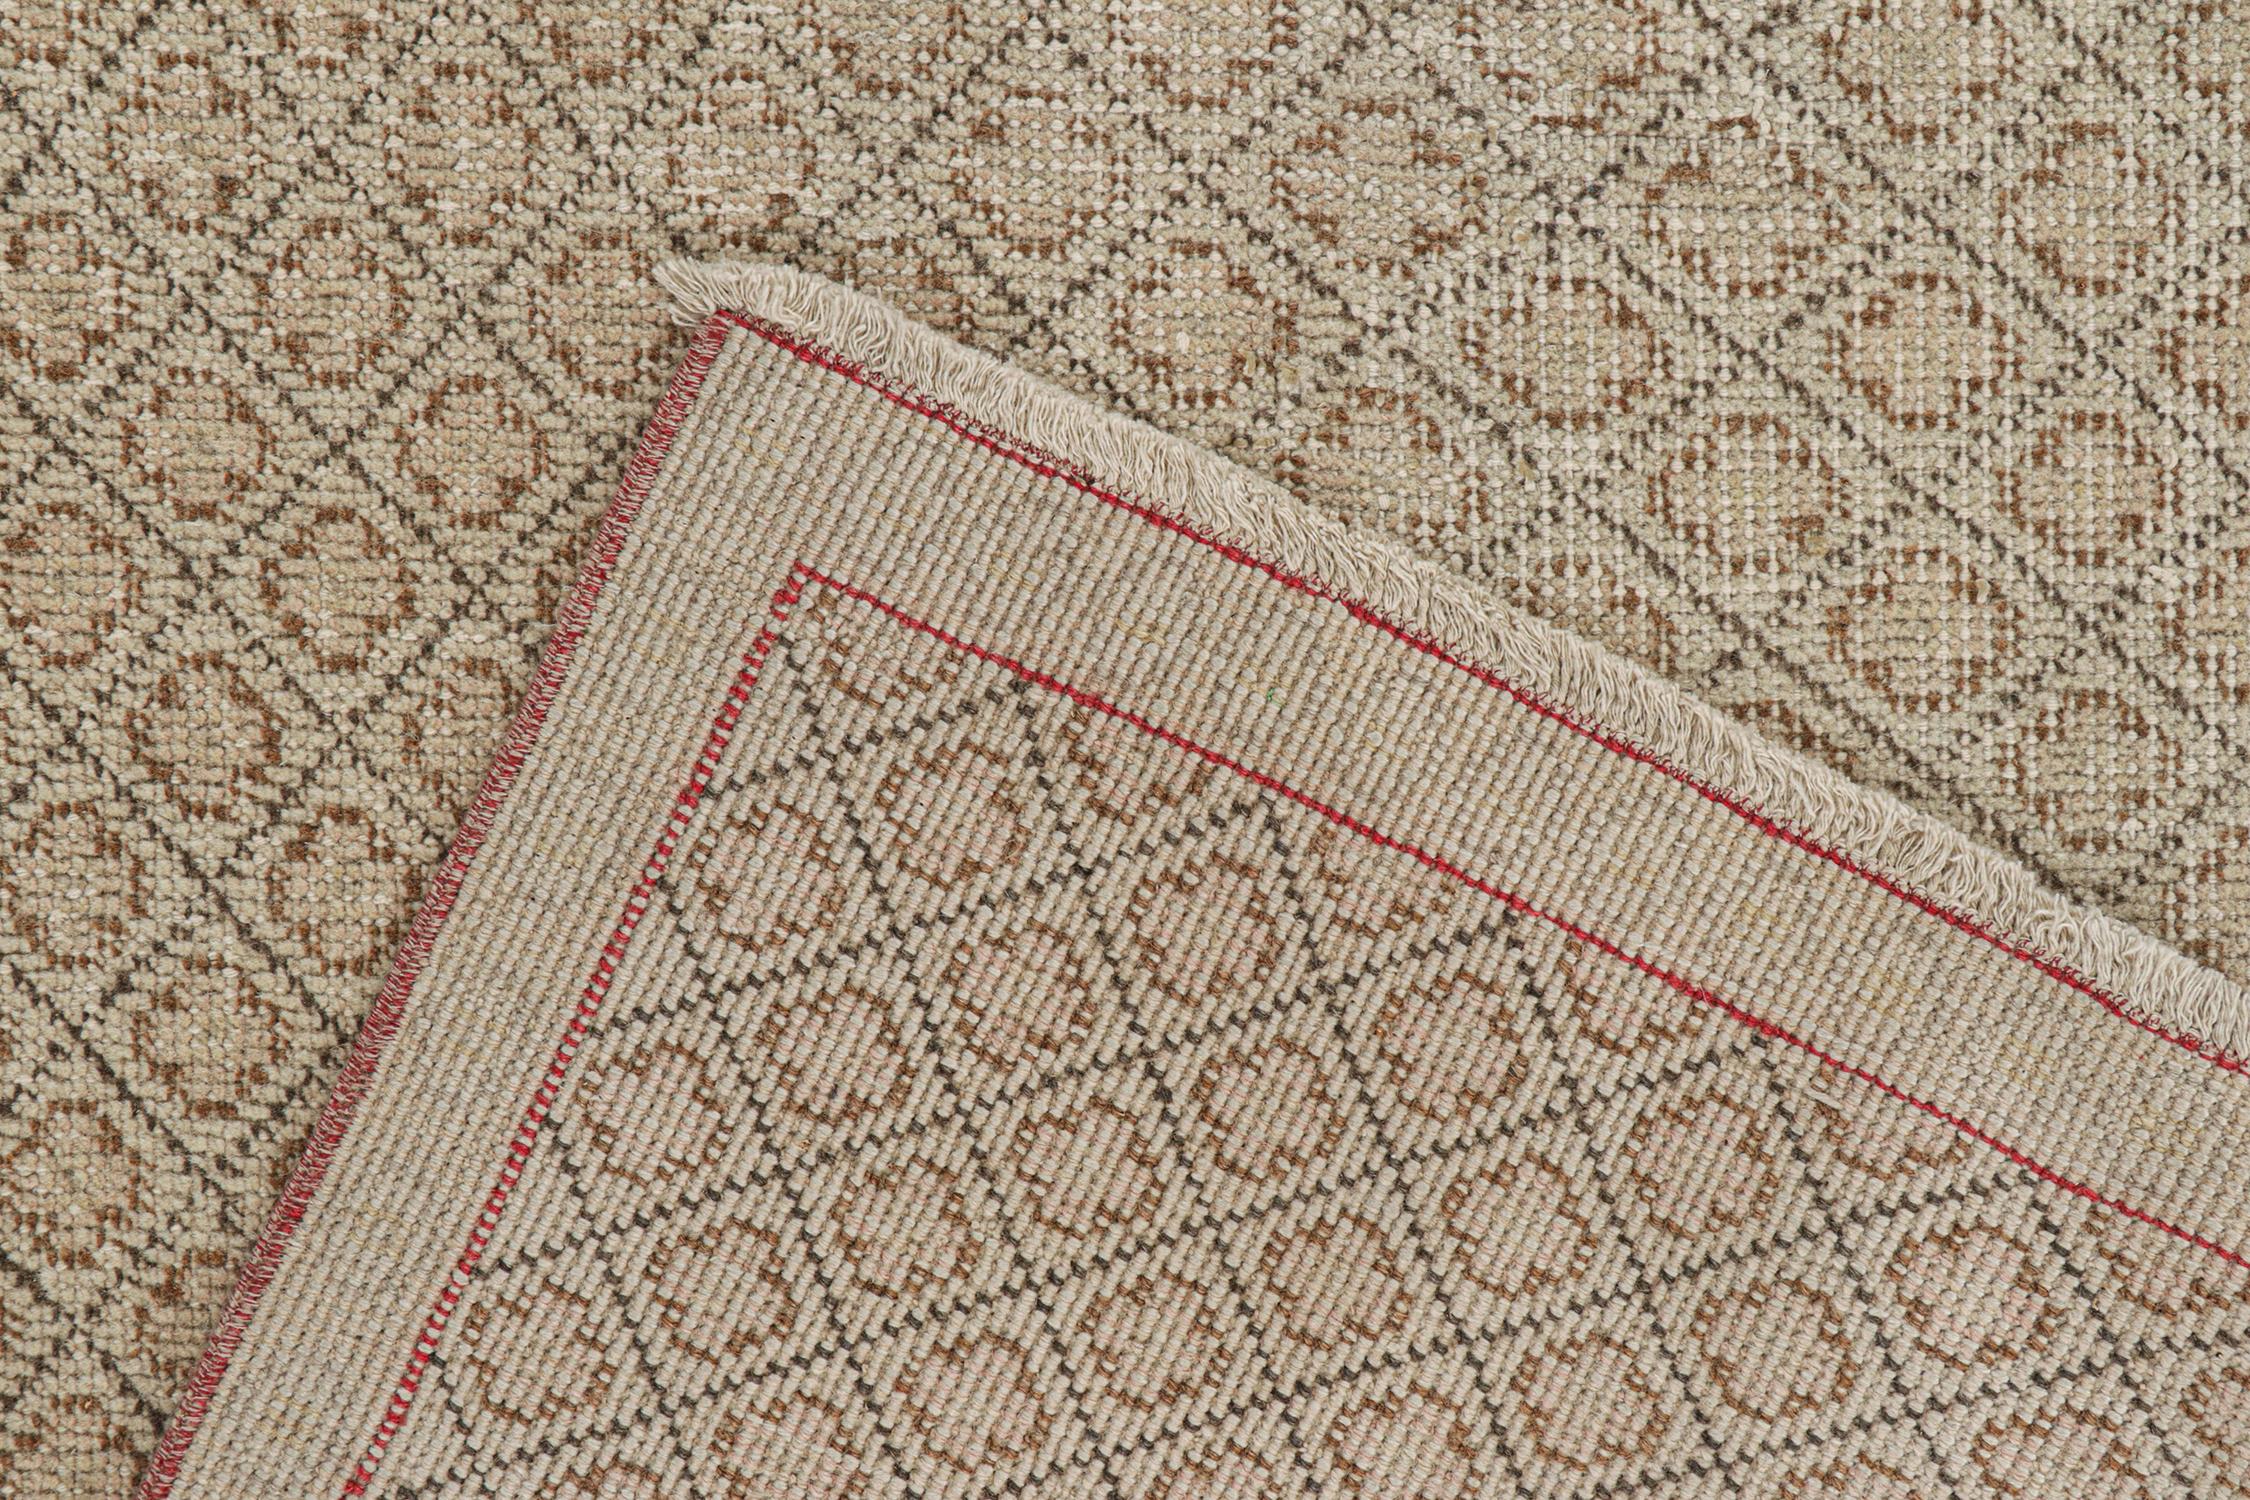 Wool Vintage Zeki Müren Rug with Beige-Brown Geometric Pattern by Rug & Kilim For Sale